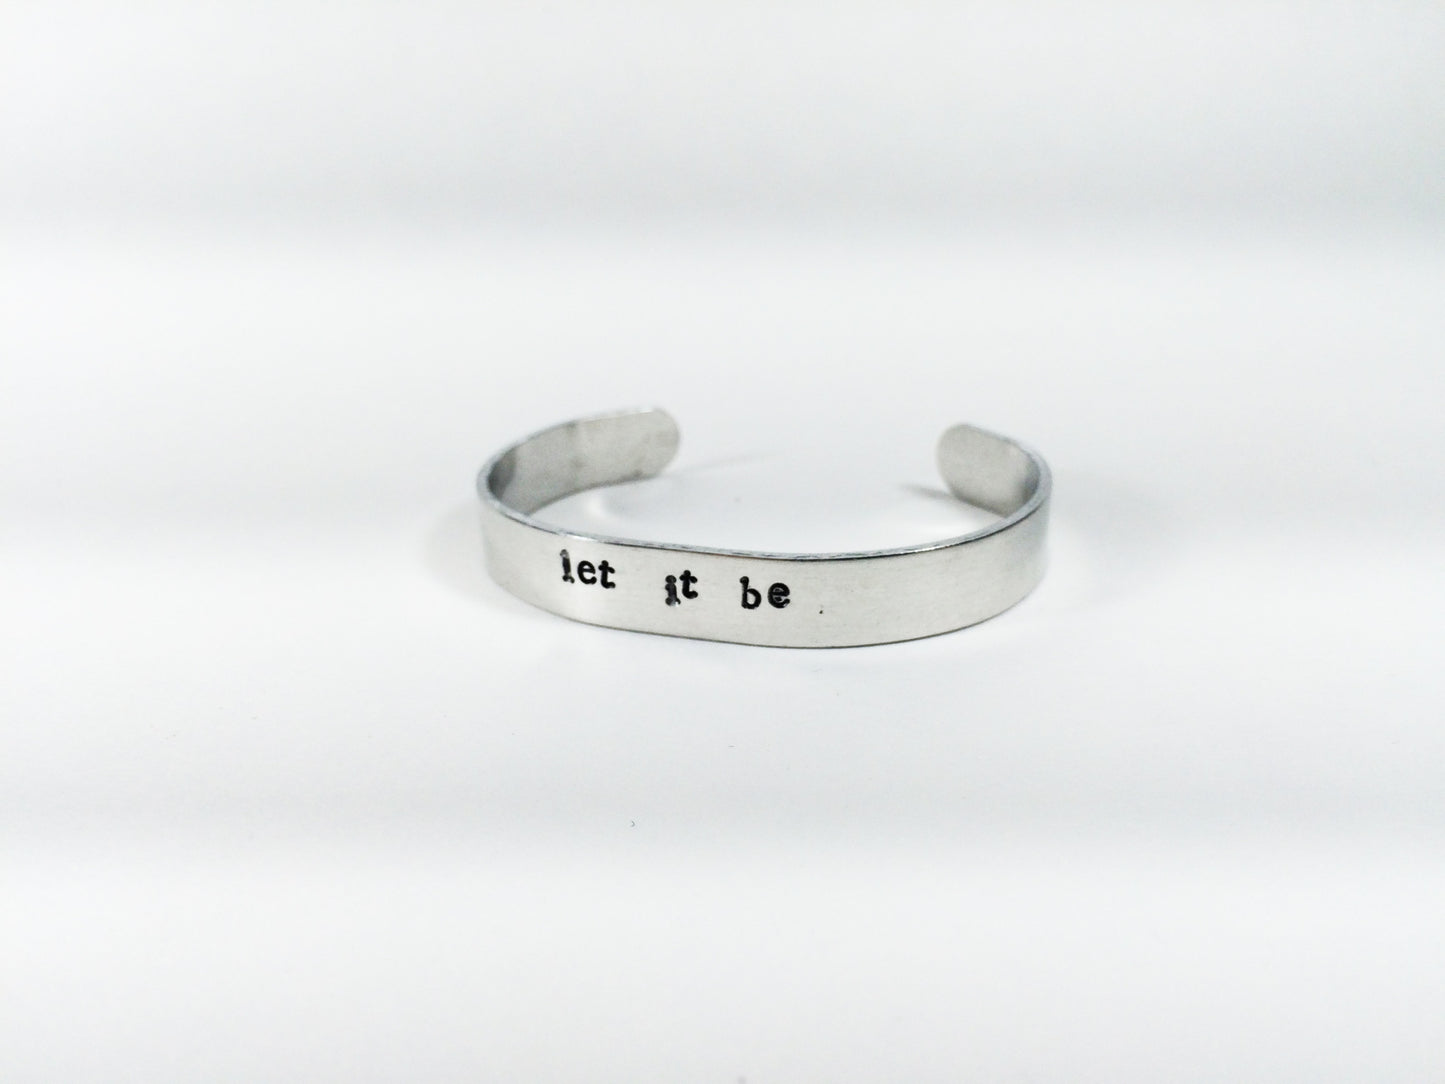 Custom handmade aluminum bracelet